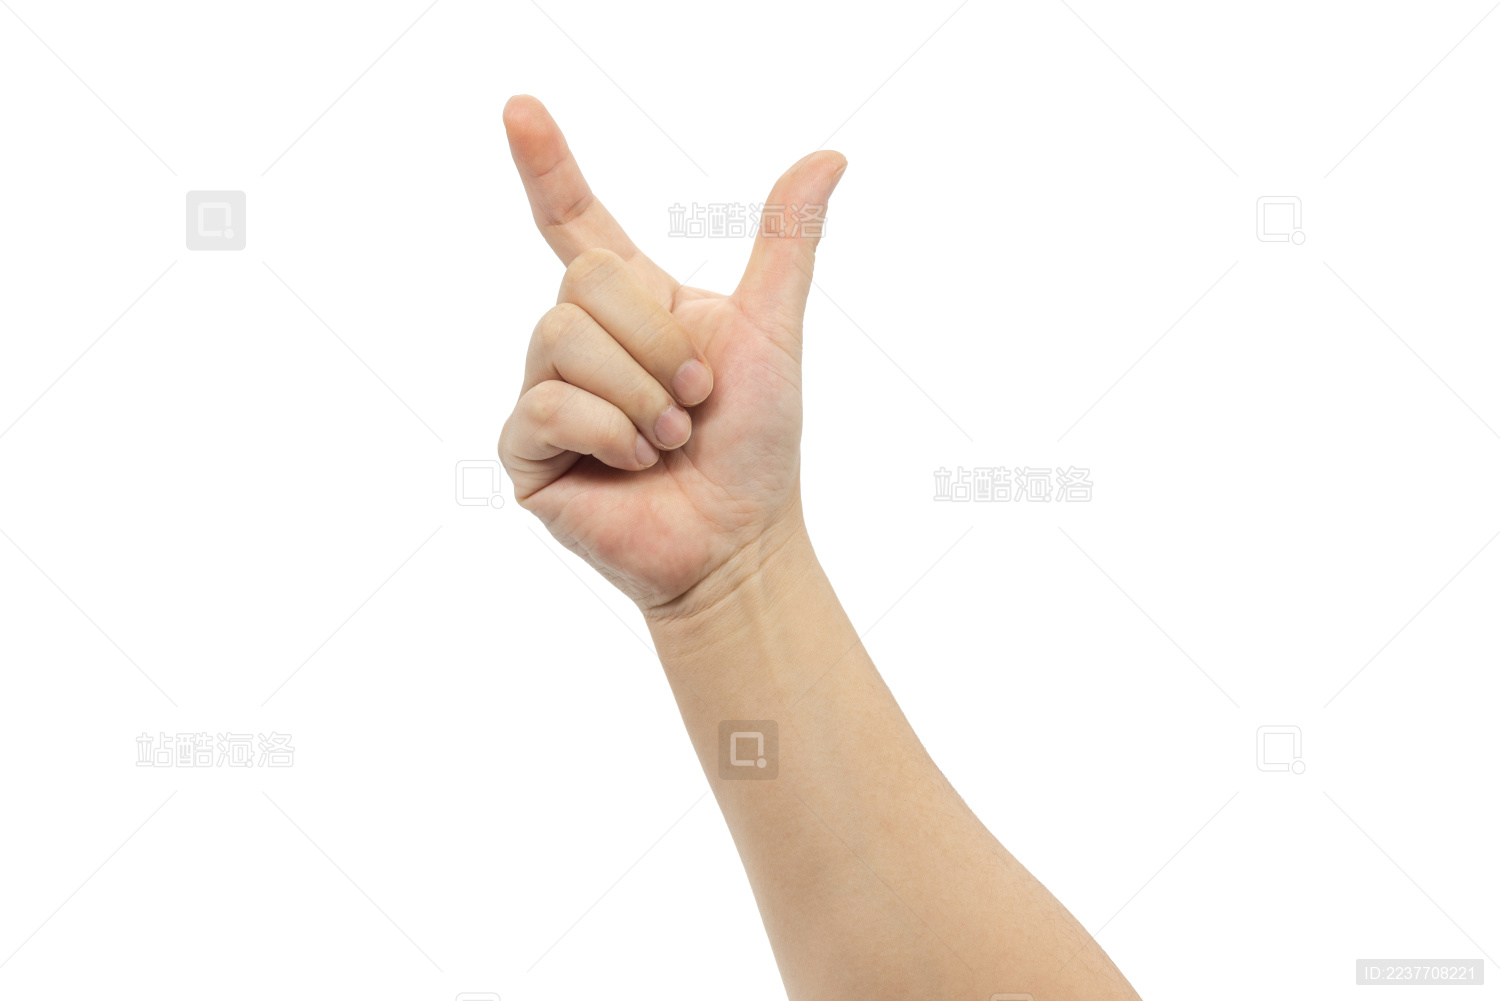 🫰 食指与拇指交叉的手 Emoji图片下载: 高清大图、动画图像和矢量图形 | EmojiAll